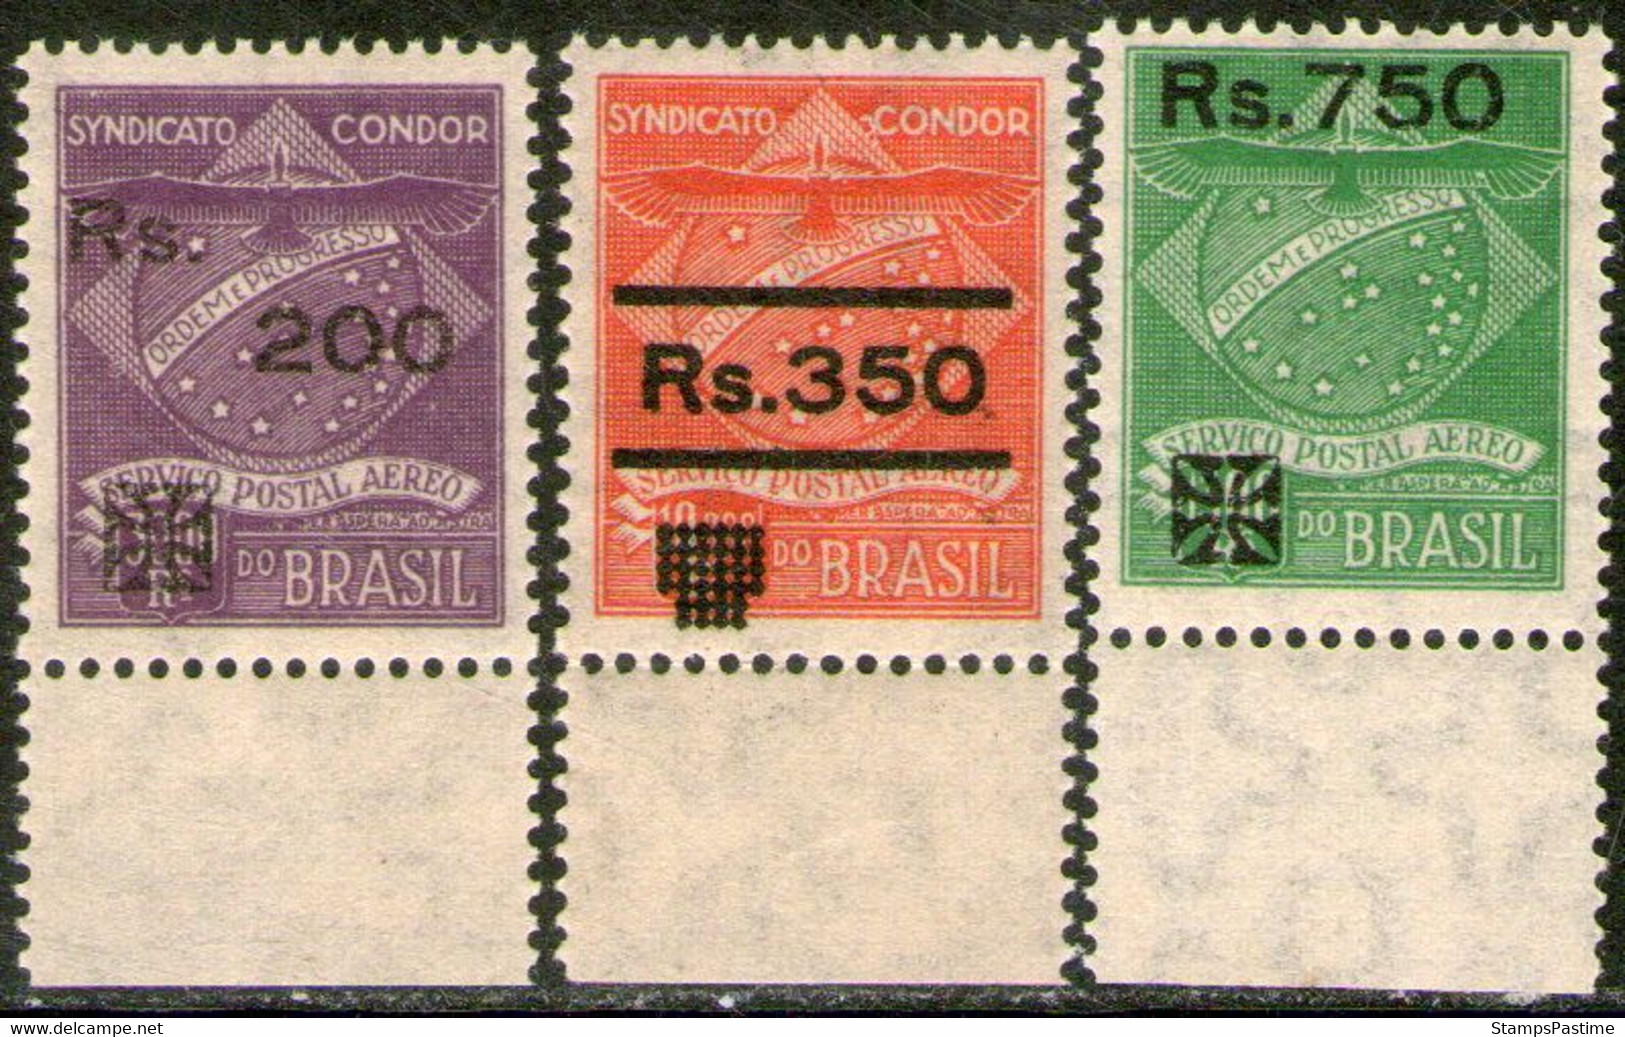 BRASIL – BRAZIL Rara Serie Aérea X 3 Sellos Mint CON COMPLEMENTOS COMPAÑÍA CÓNDOR 1930 – Valorizada En Catálogo € 24,00 - Aéreo (empresas Privadas)